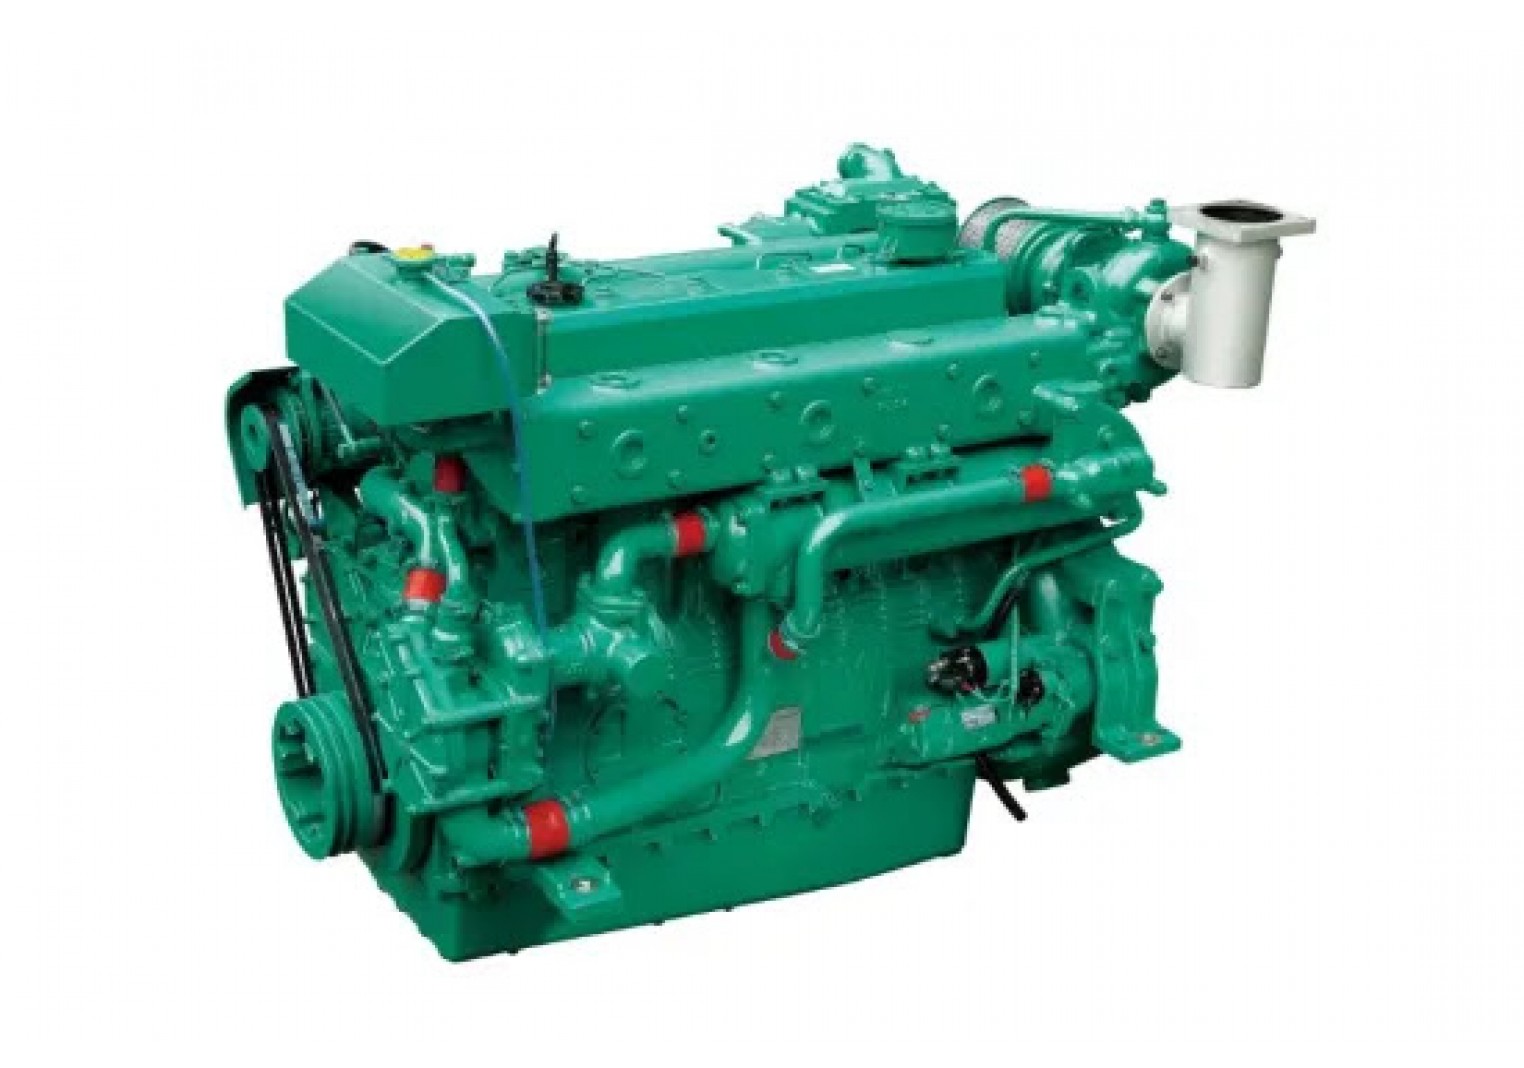 Doosan diesel engine L126ti